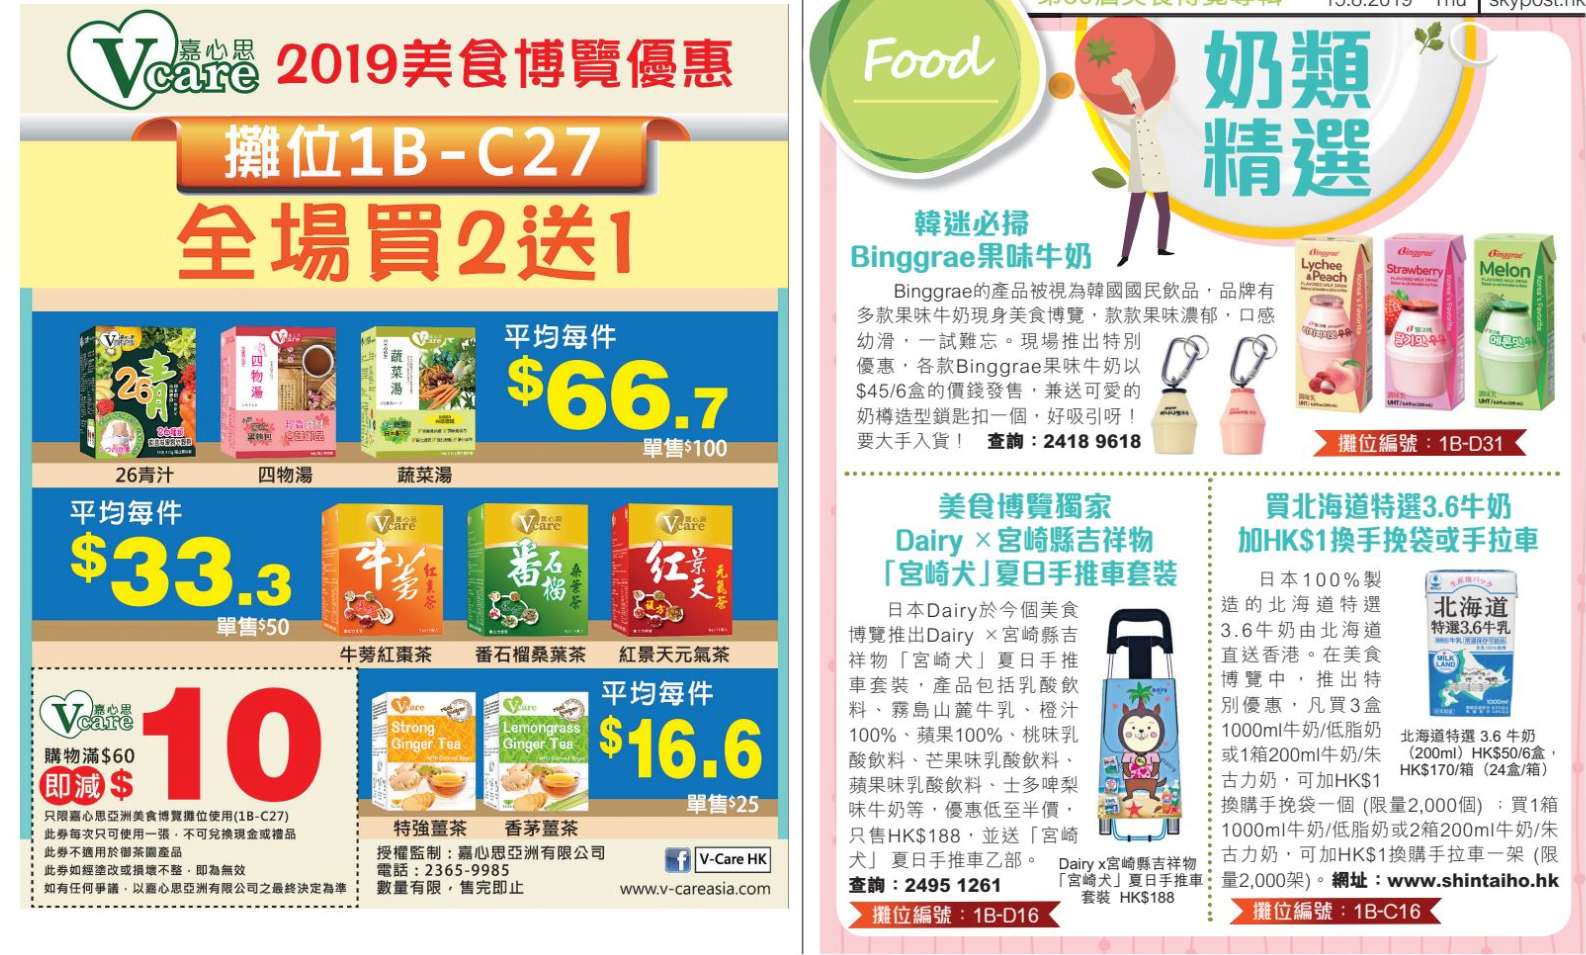 美食博覽2019 優惠(19年8月15-19日)圖片14